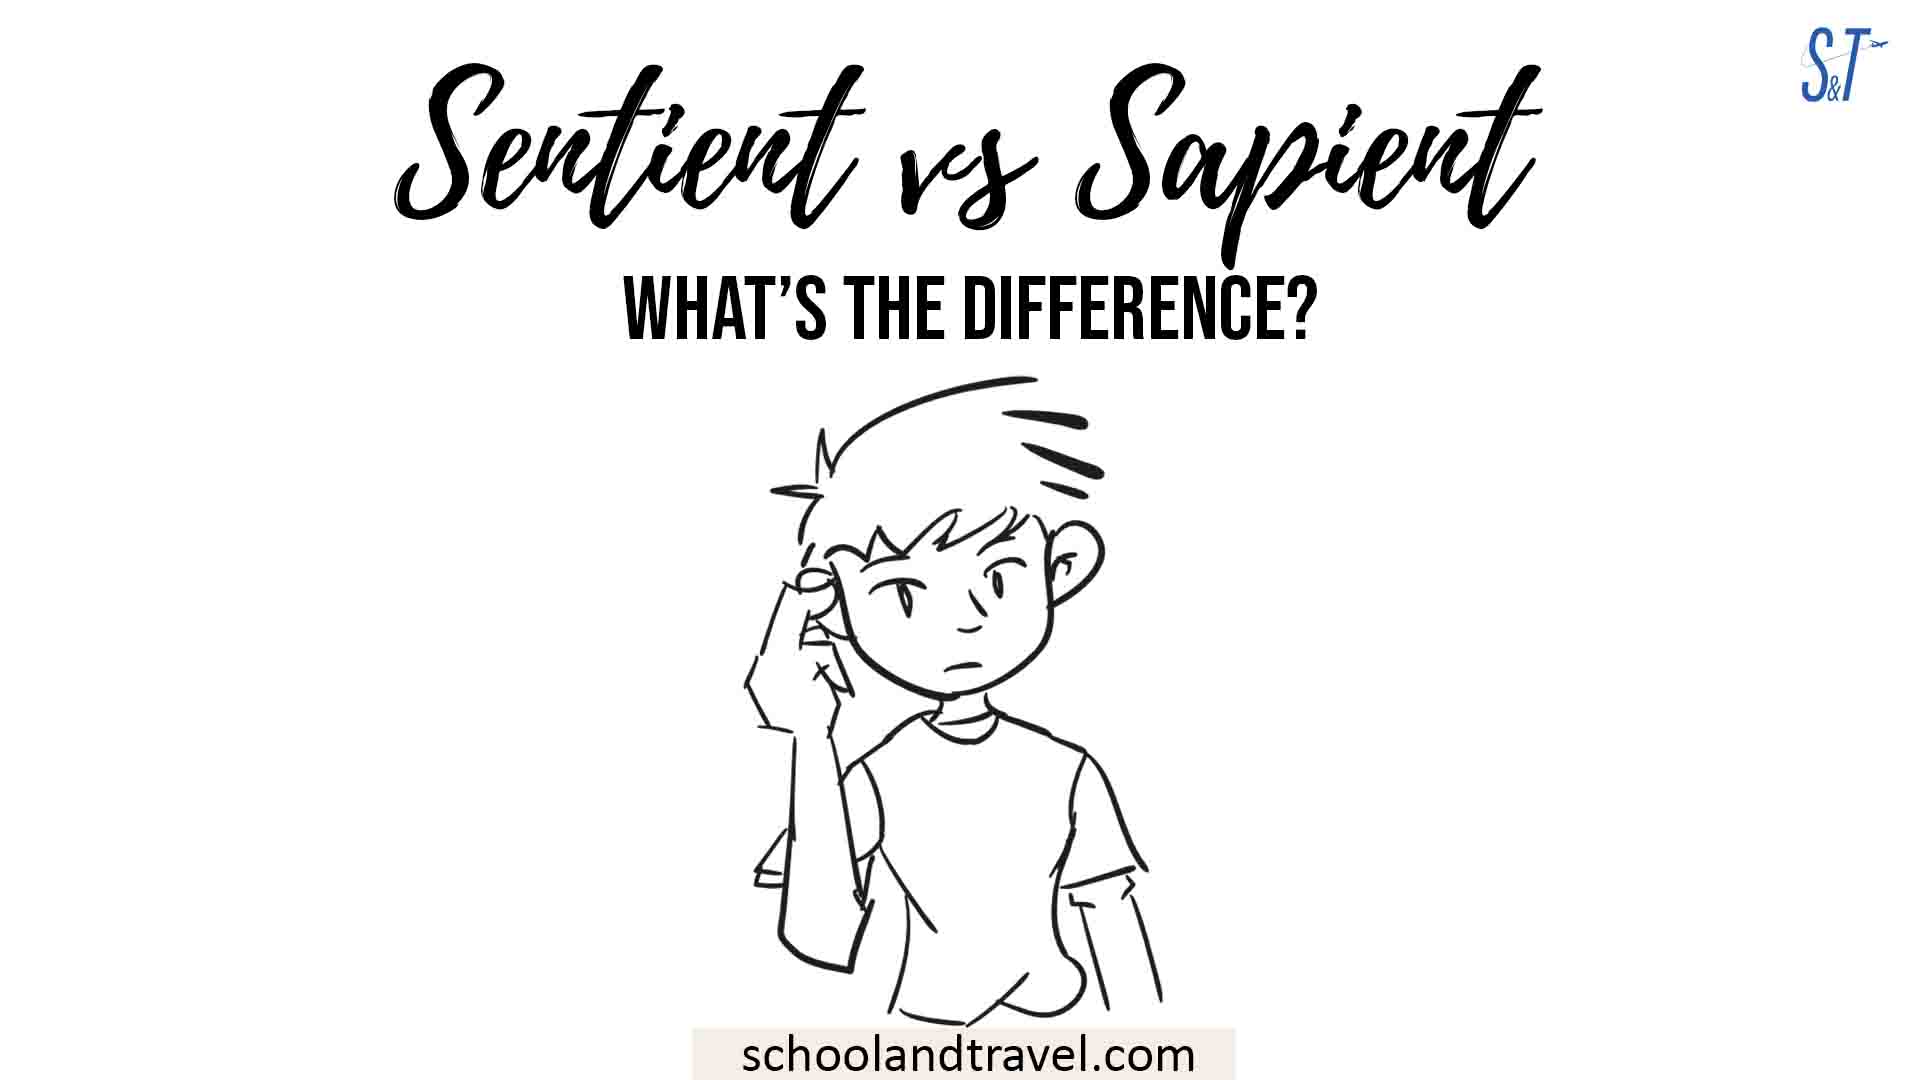 Sentient vs Sapient